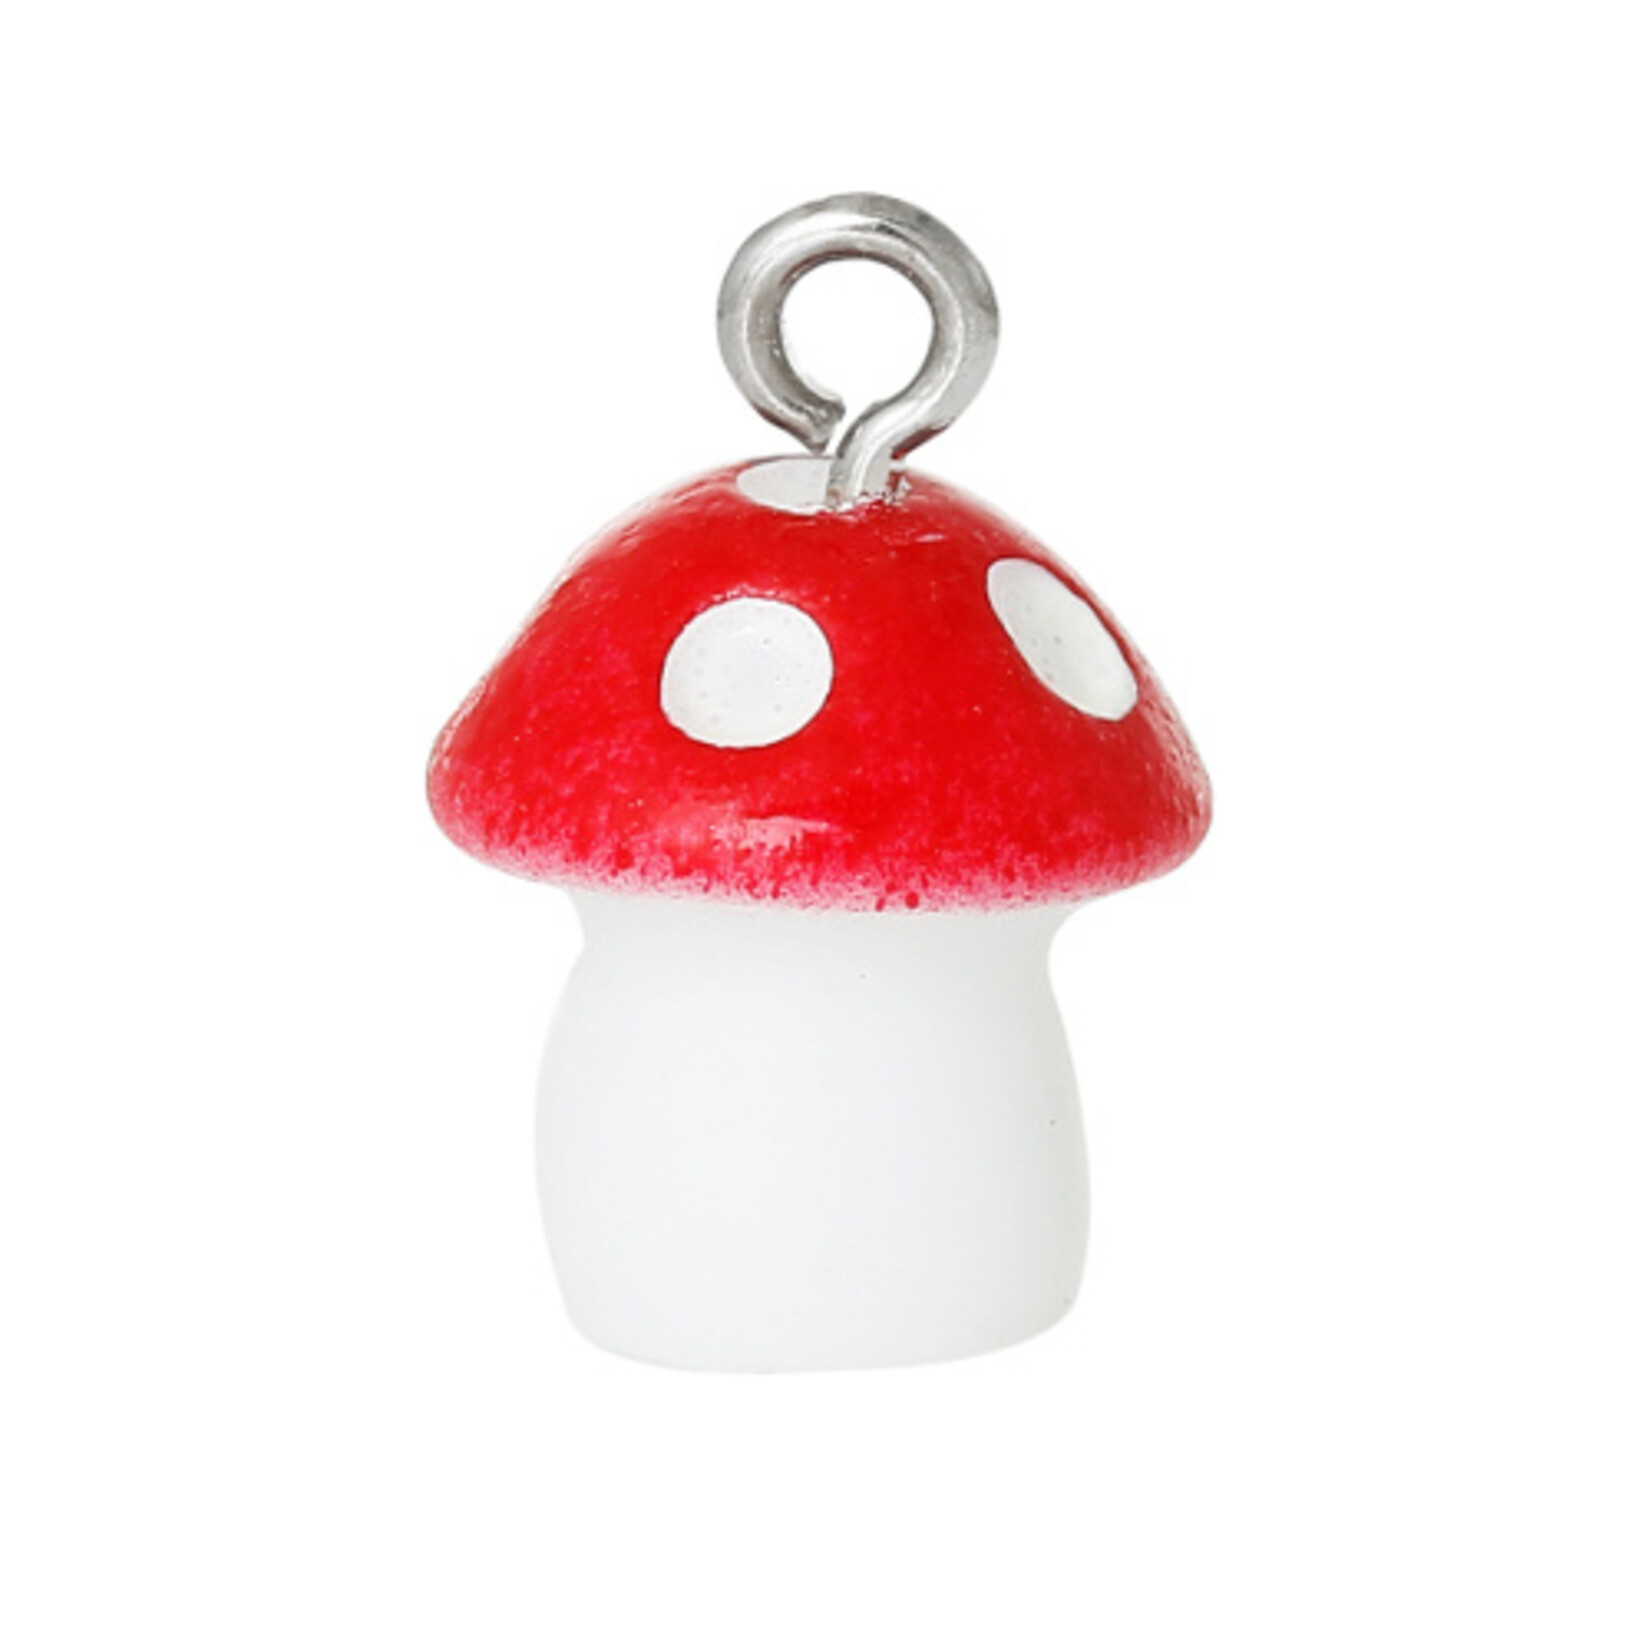 Bedel paddenstoel rood met witte stippen